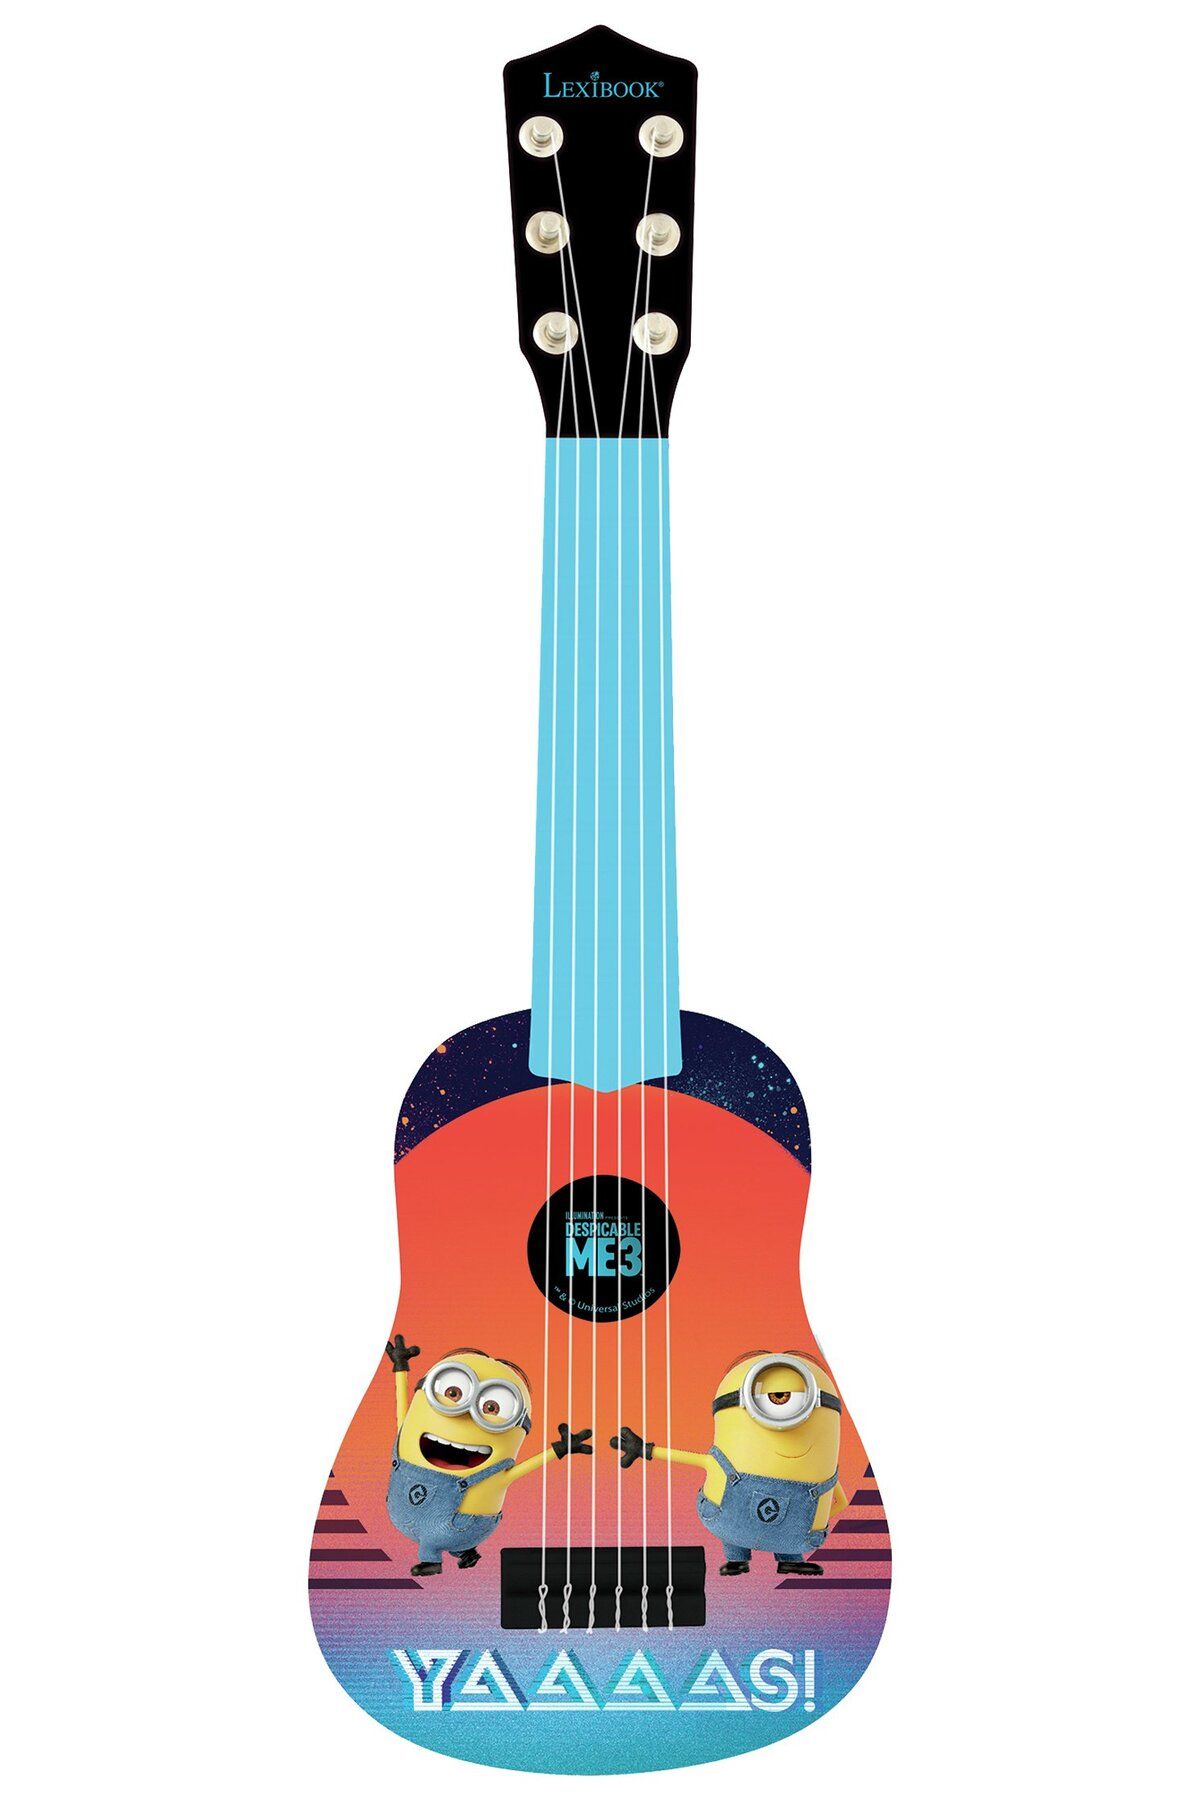 LEXIBOOK FRANCO Lexibook K200DES - Despicable Me 3 Gitar, çocuklar için, Minions tasarım, 6 telli, Enstrüman